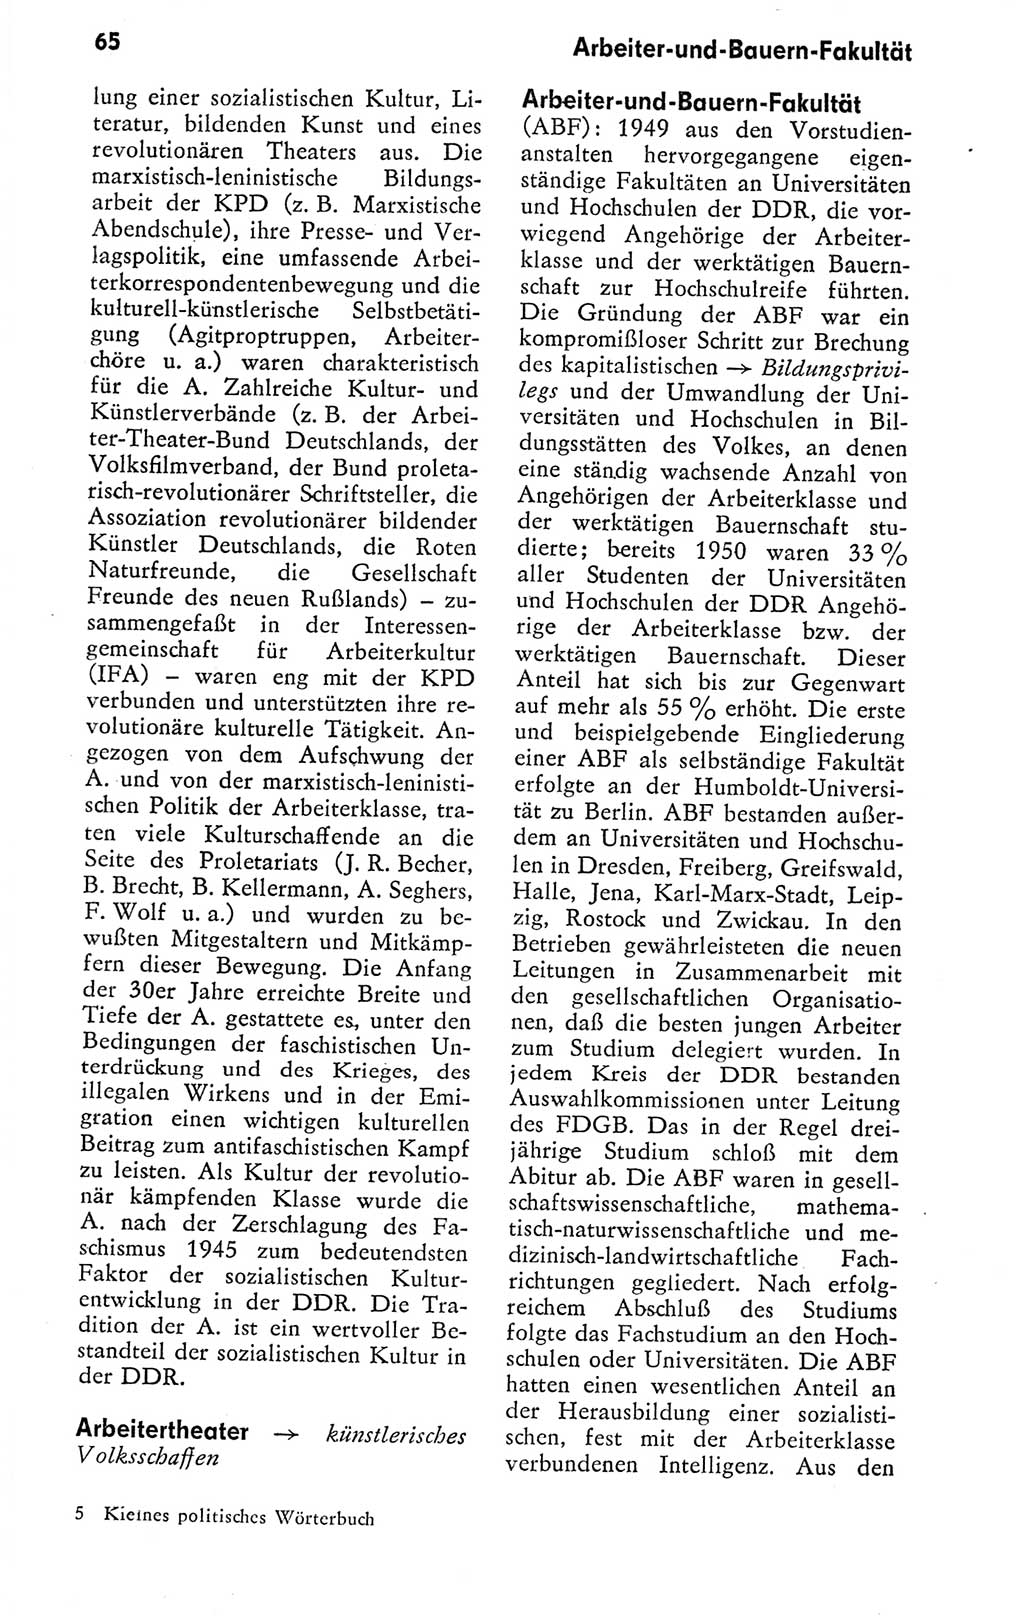 Kleines politisches Wörterbuch [Deutsche Demokratische Republik (DDR)] 1978, Seite 65 (Kl. pol. Wb. DDR 1978, S. 65)